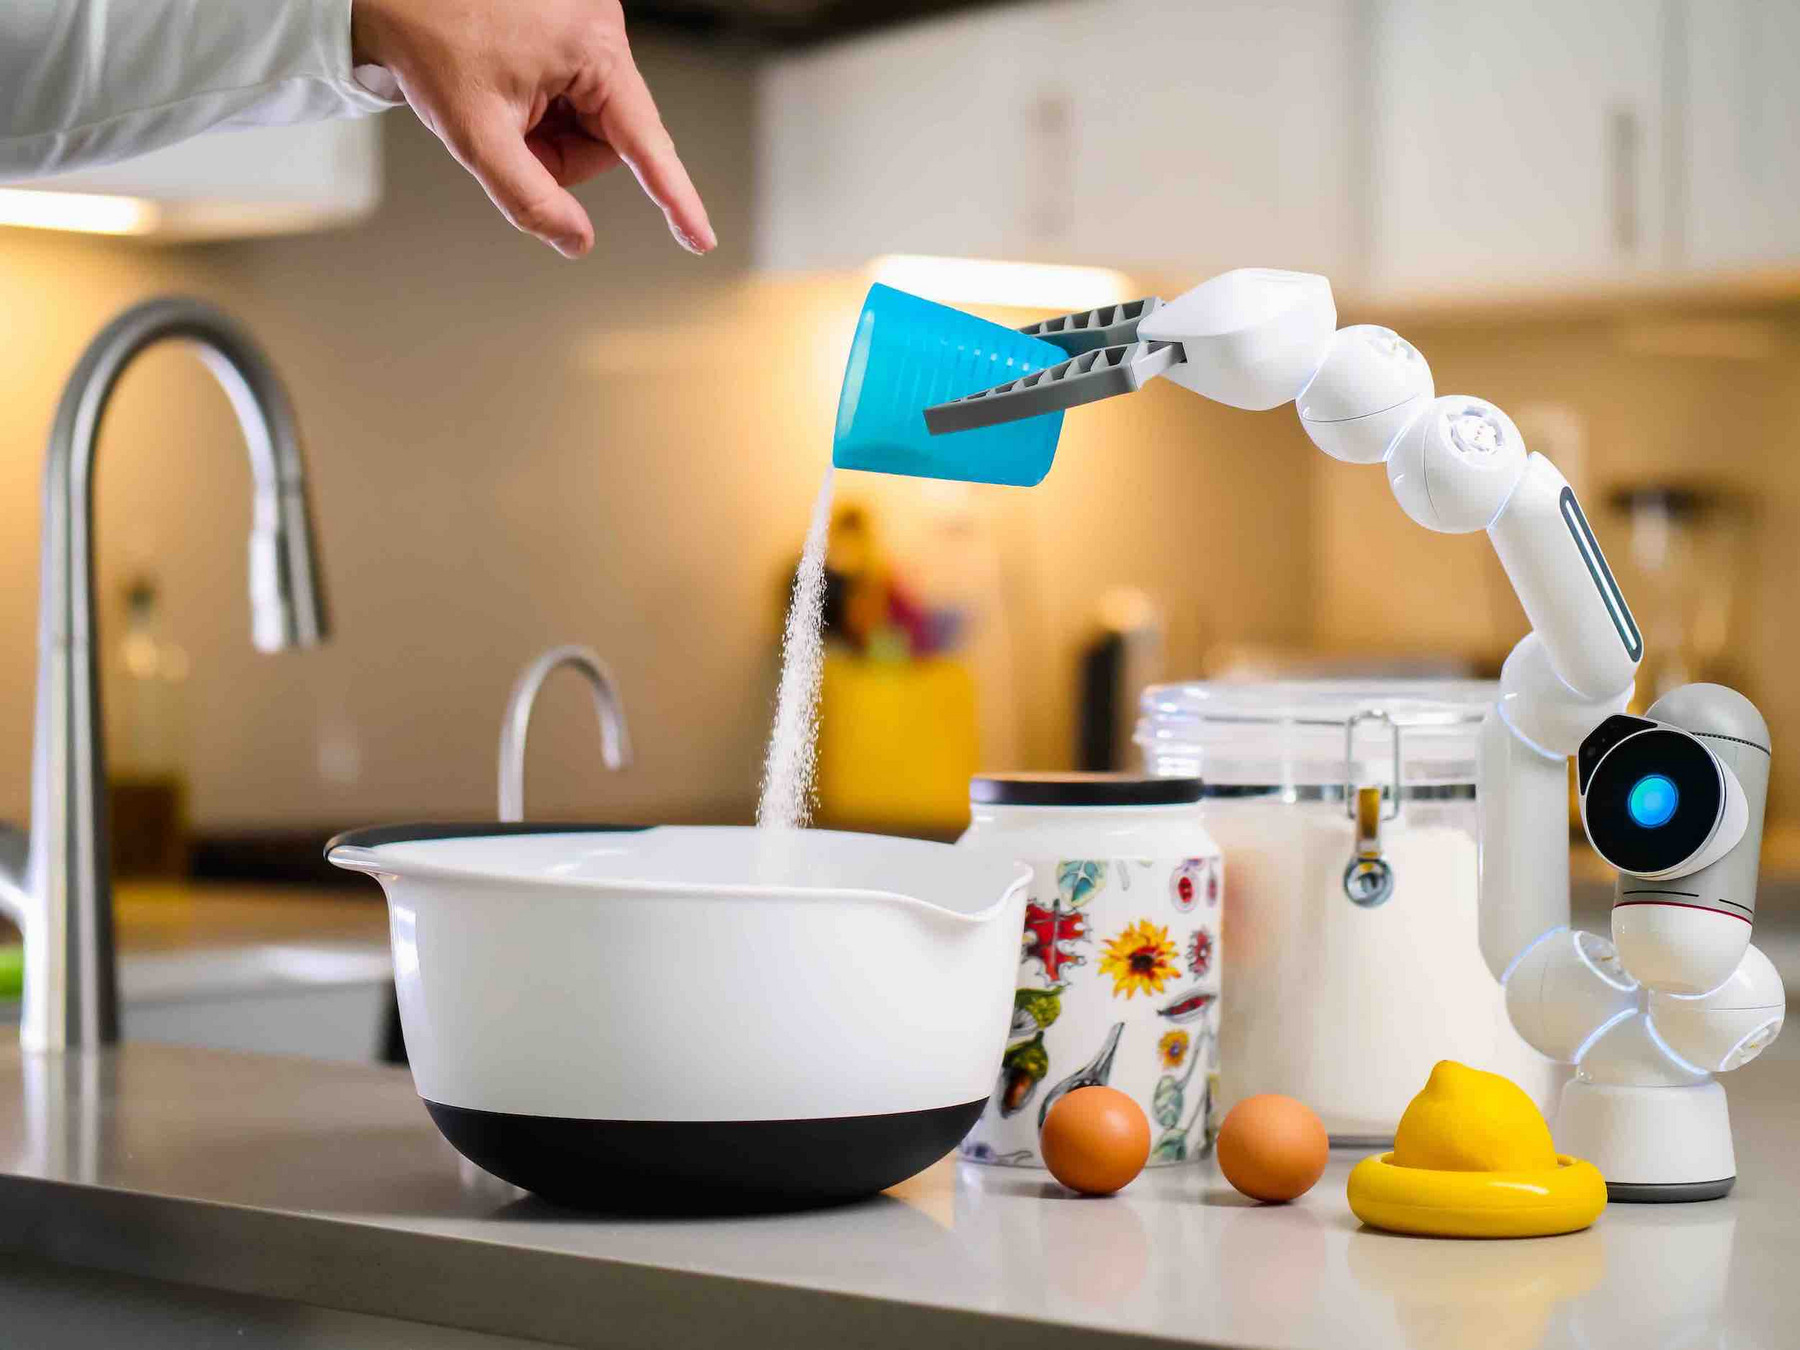 Ein Roboterarm steht auf einer Kochzeile und schüttet Zucker in eine Rührschüssel. Daneben ein Gefäß mit Zucker, zwei braune Hühnereier und eine halbe Zitrone. Am oberen Rand des Bildes ist eine Hand zu sehen, die mit dem Finger in die Rührschüssel zeigt.